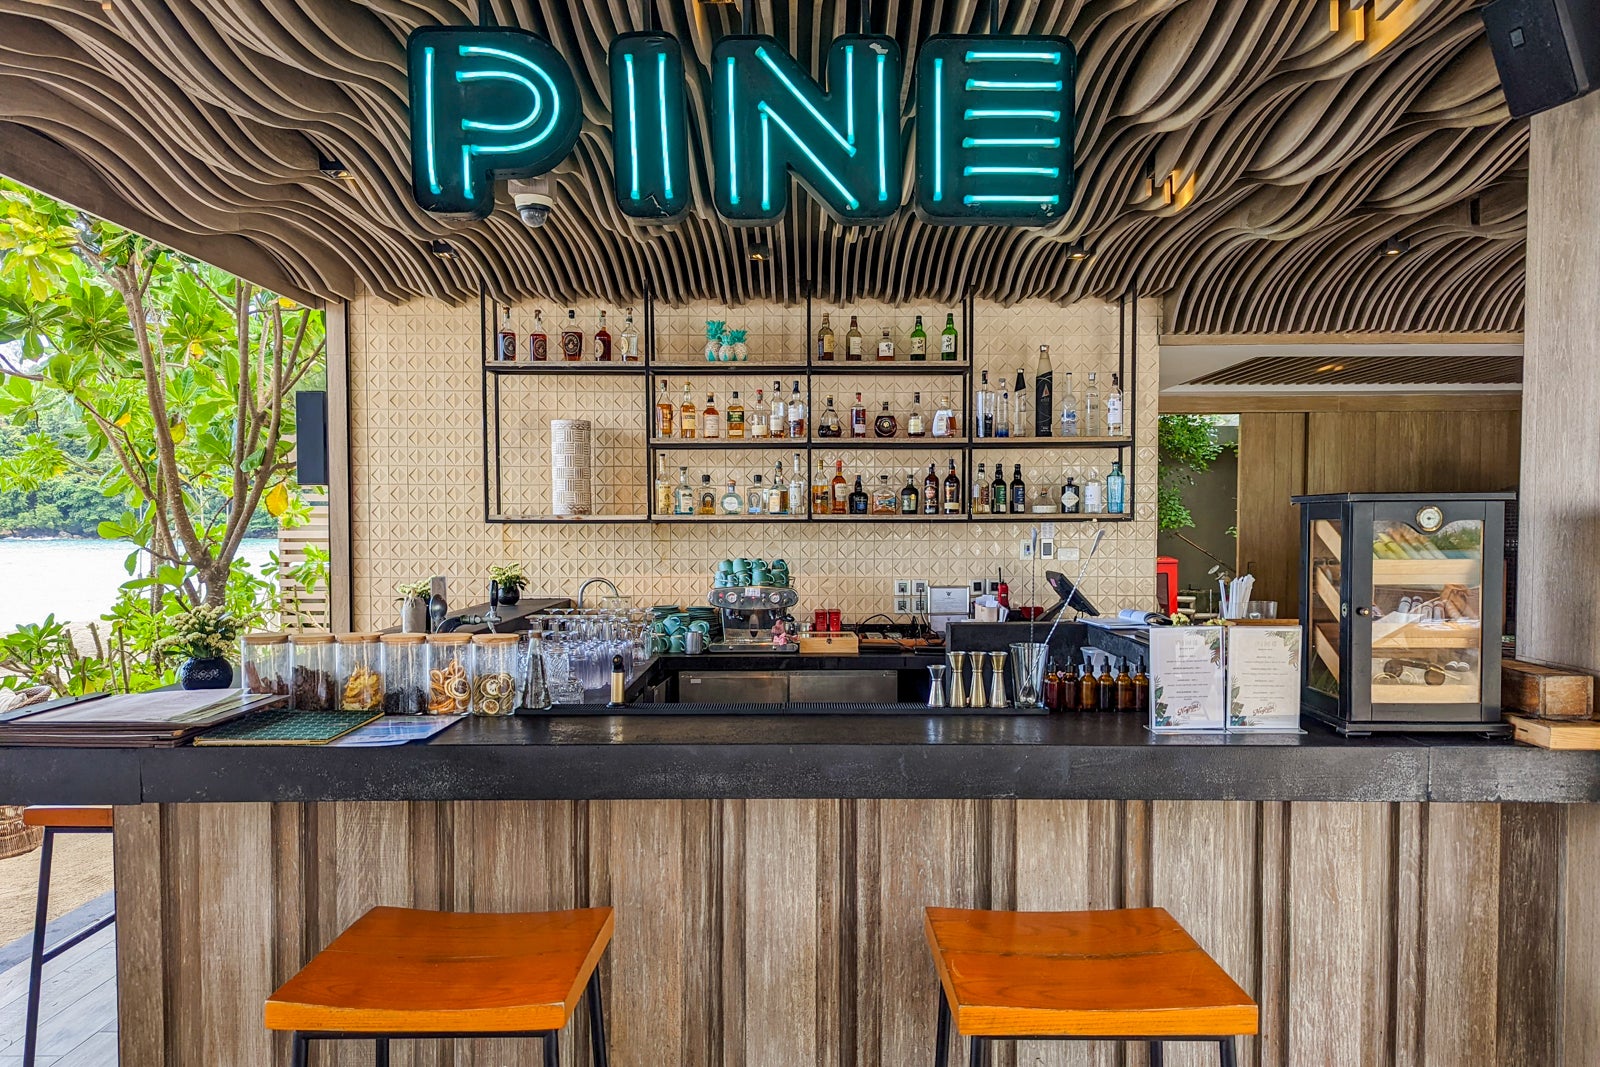 InterContinental Phuket Resort Pine